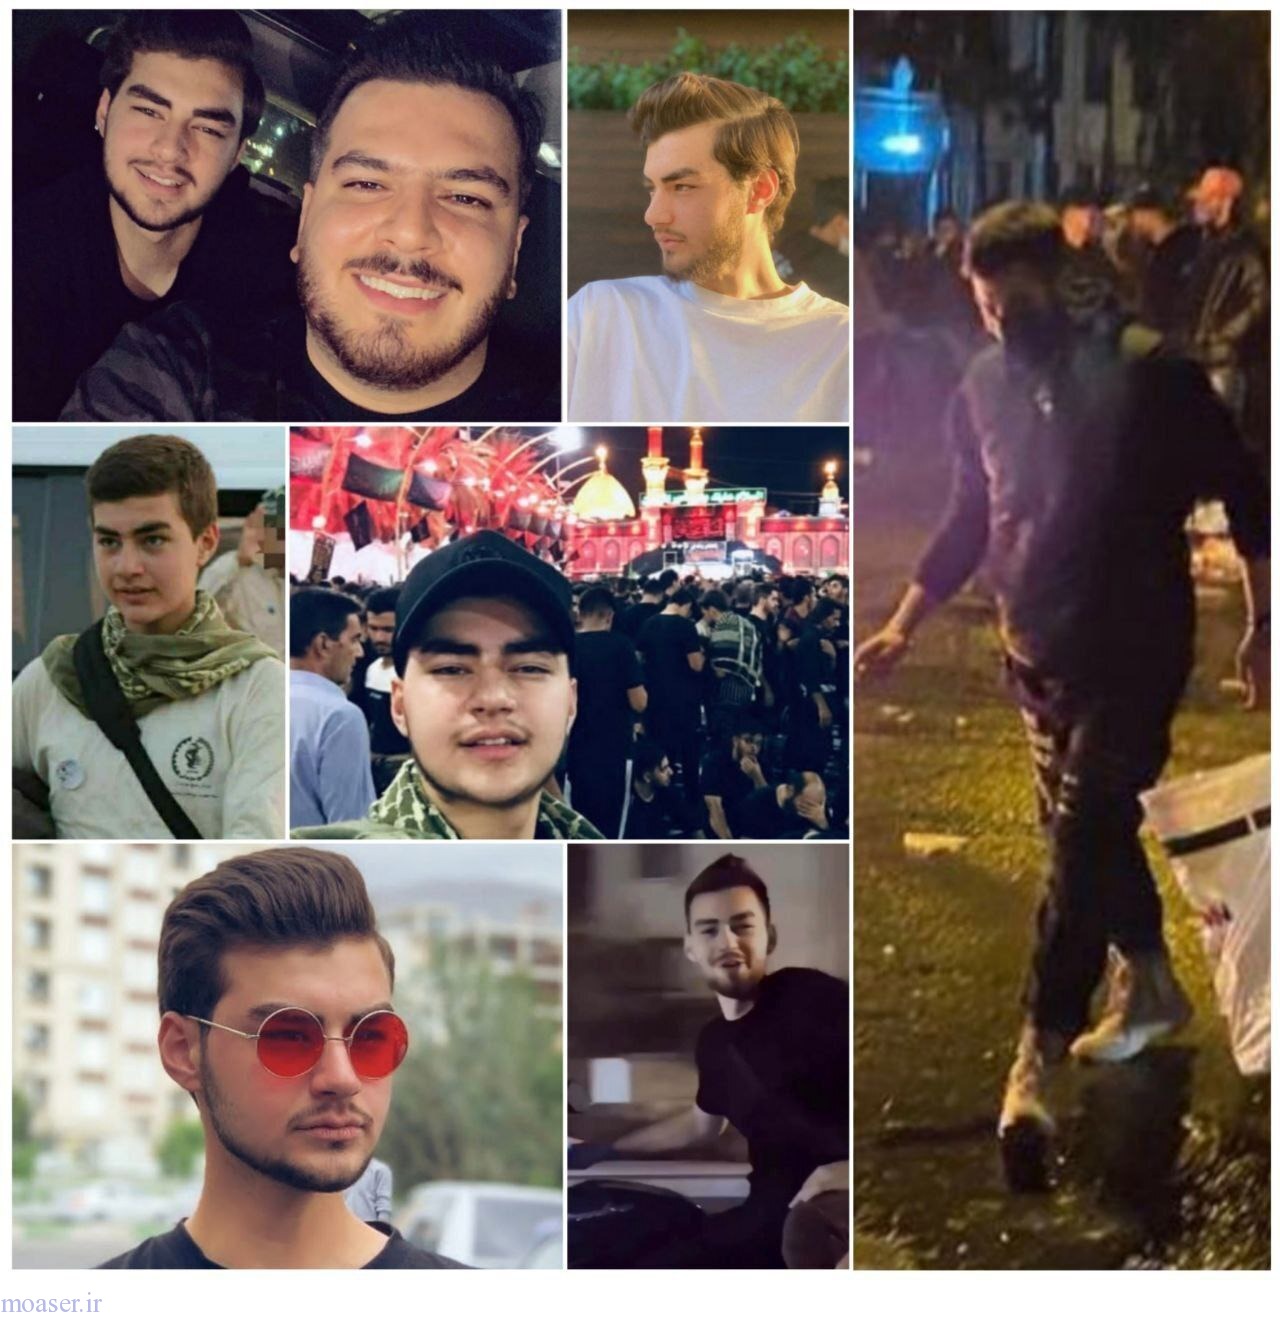 فارس: حمیدرضا روحی به عنوان عضو بسیج معرفی شده اما او به عنوان معترض در اعتراضات خیابانی تهران شرکت کرده بود